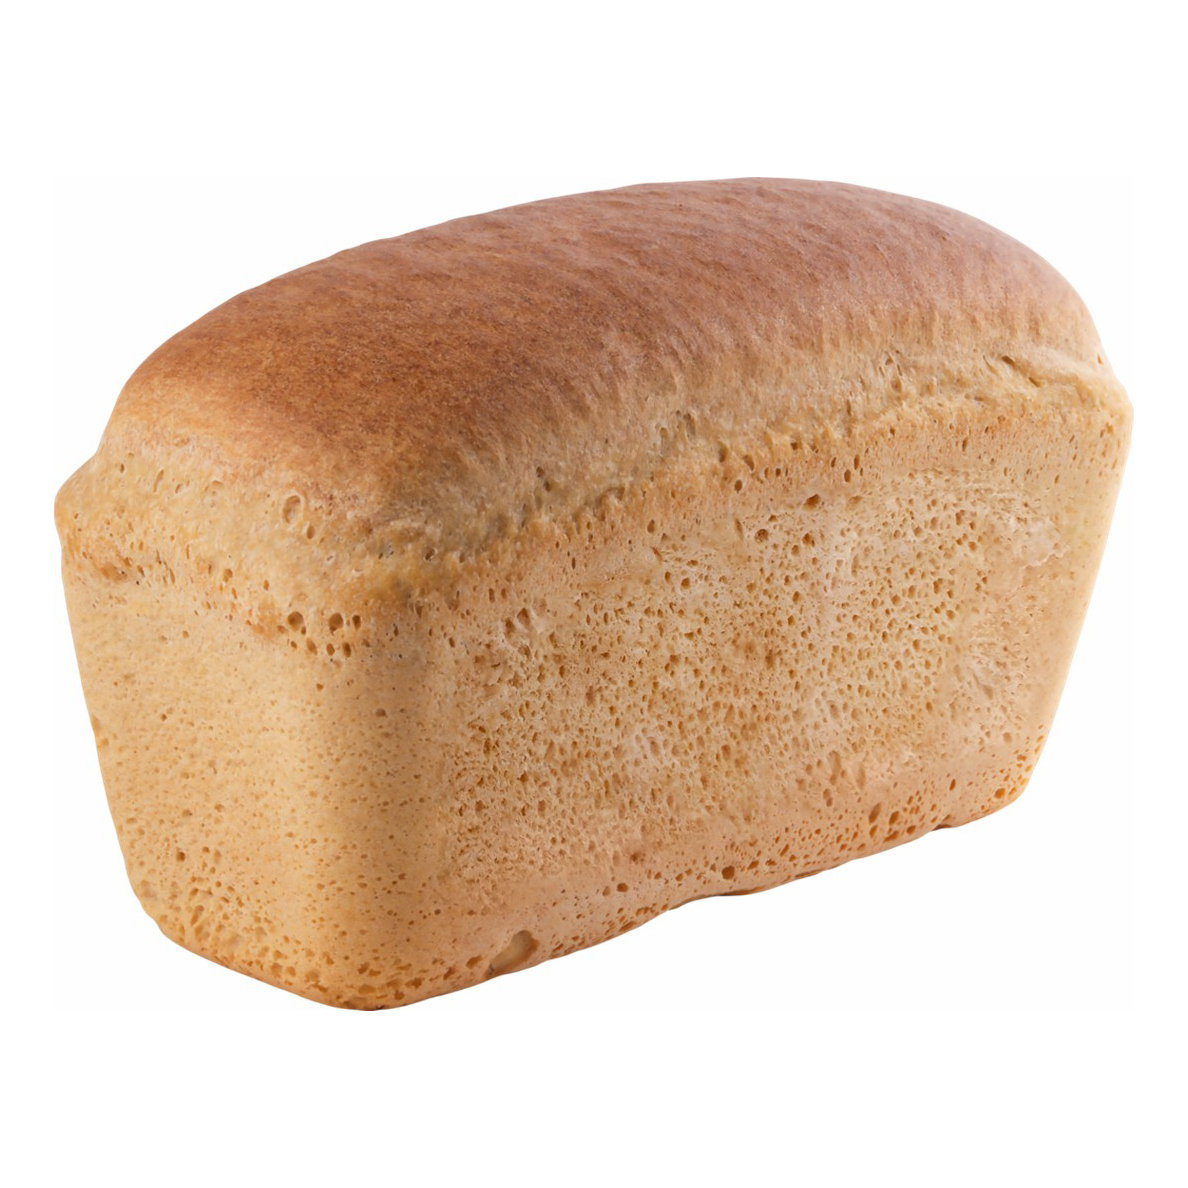 Хлеб пшеничный формовой 1 сорт